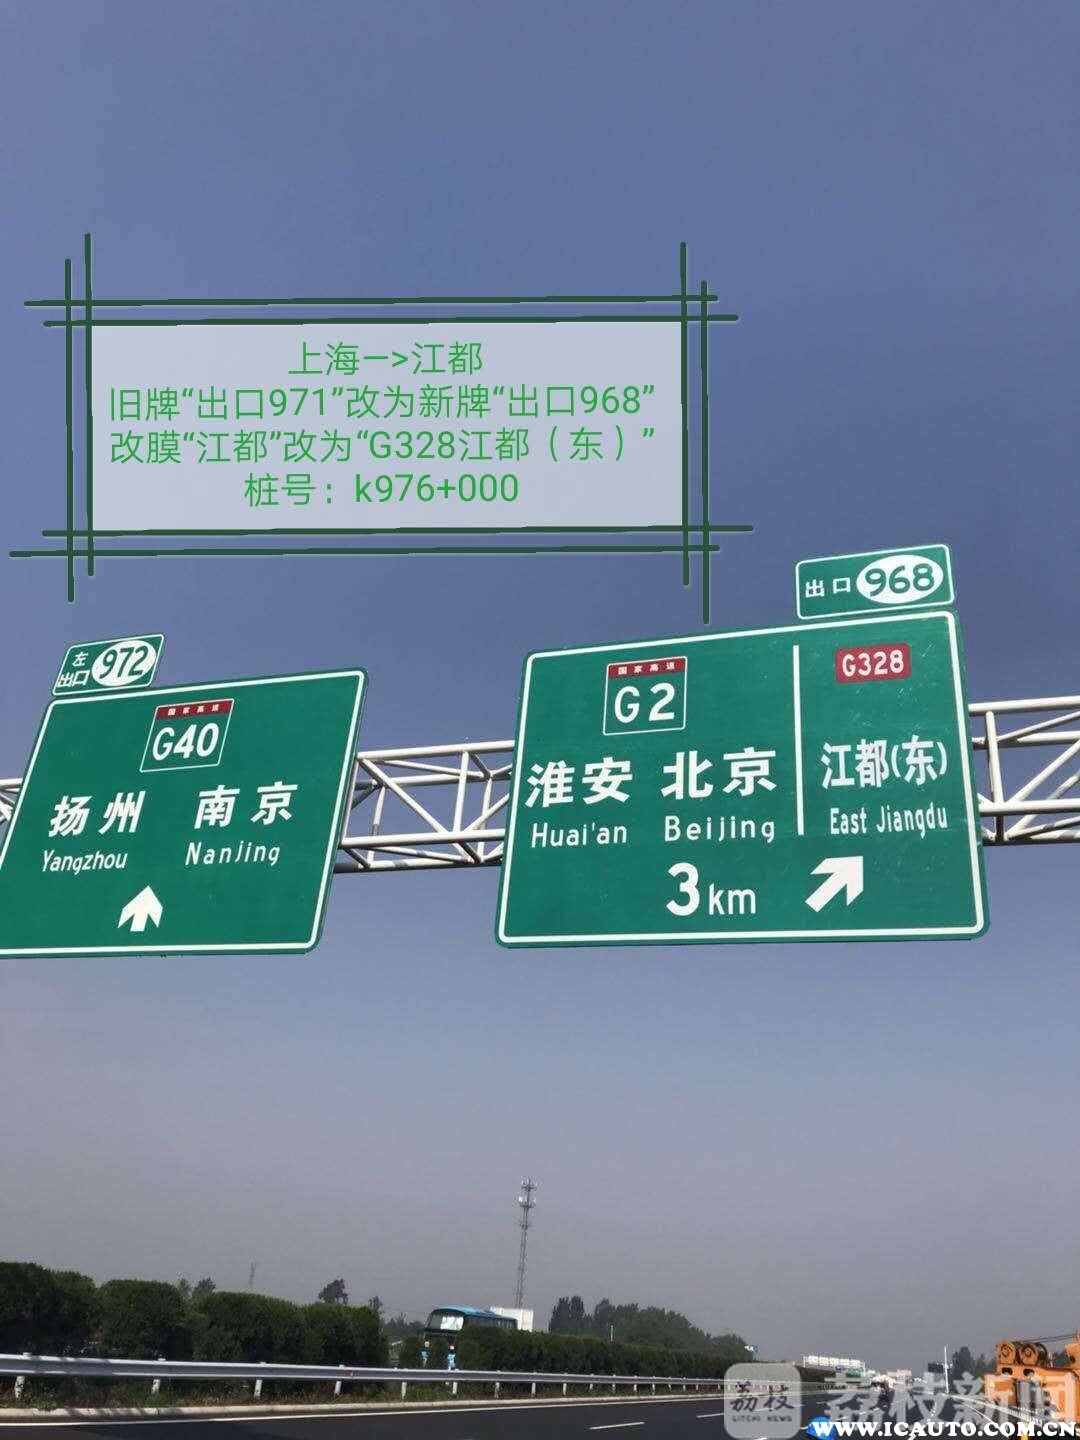 车主指南：G2(京沪高速公路)砖桥收费站2018年6月16日0:00起关闭